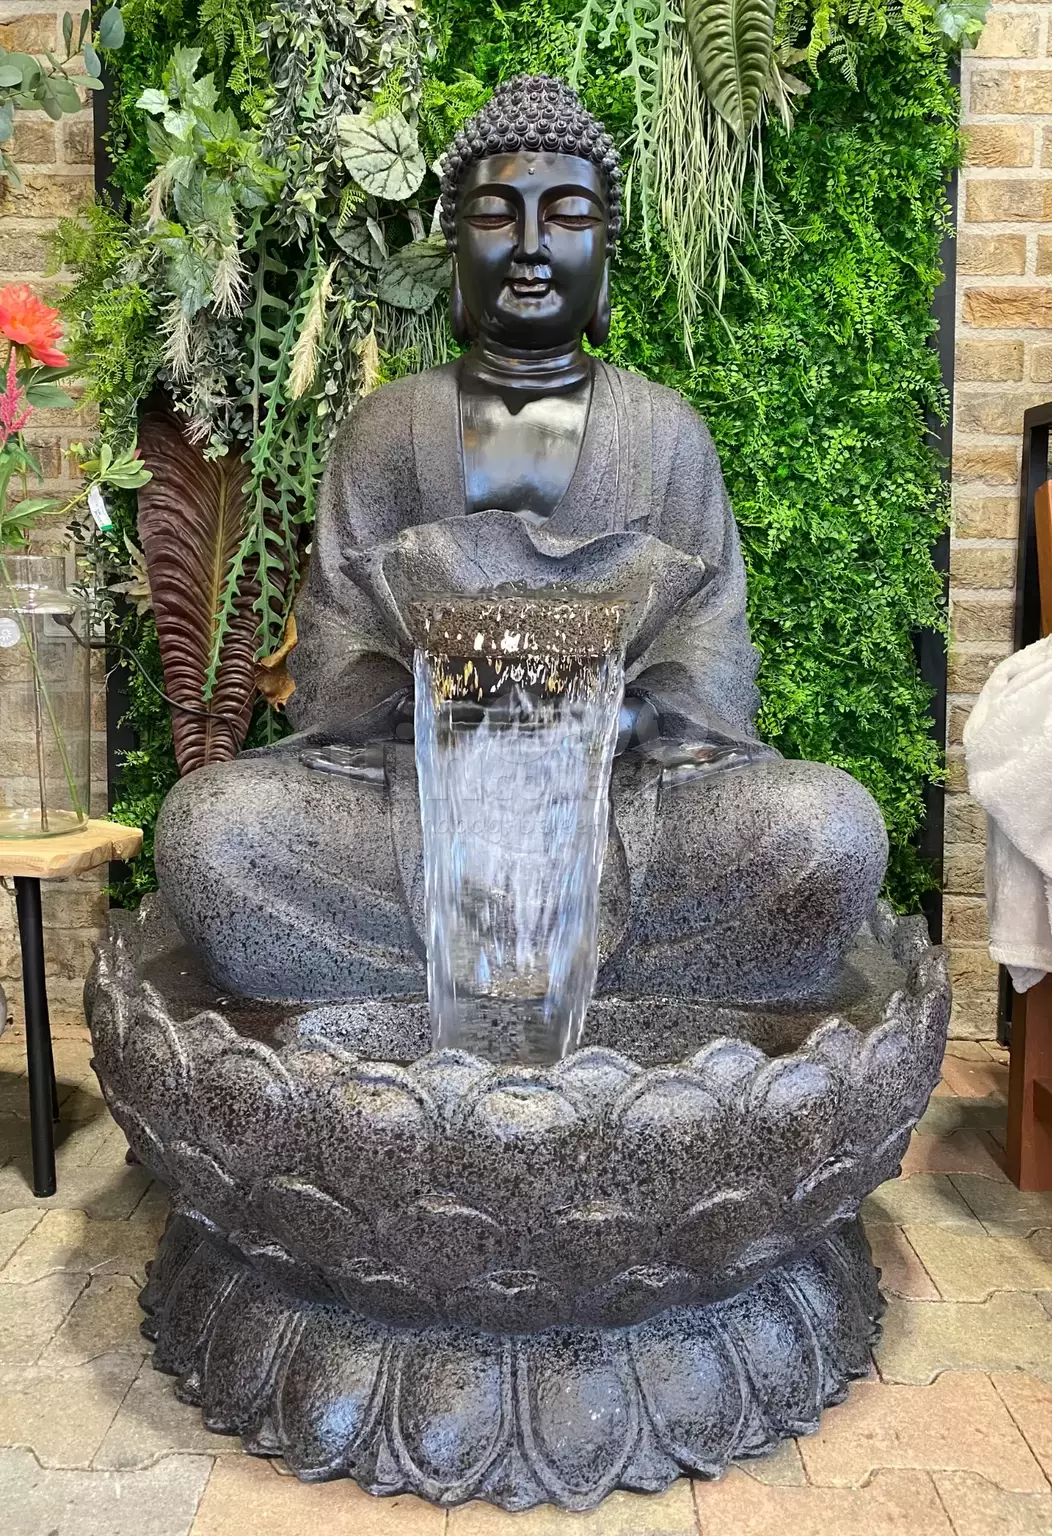 Waterornament Boeddha XL | Bekijk onze - Tuincollectie.nl